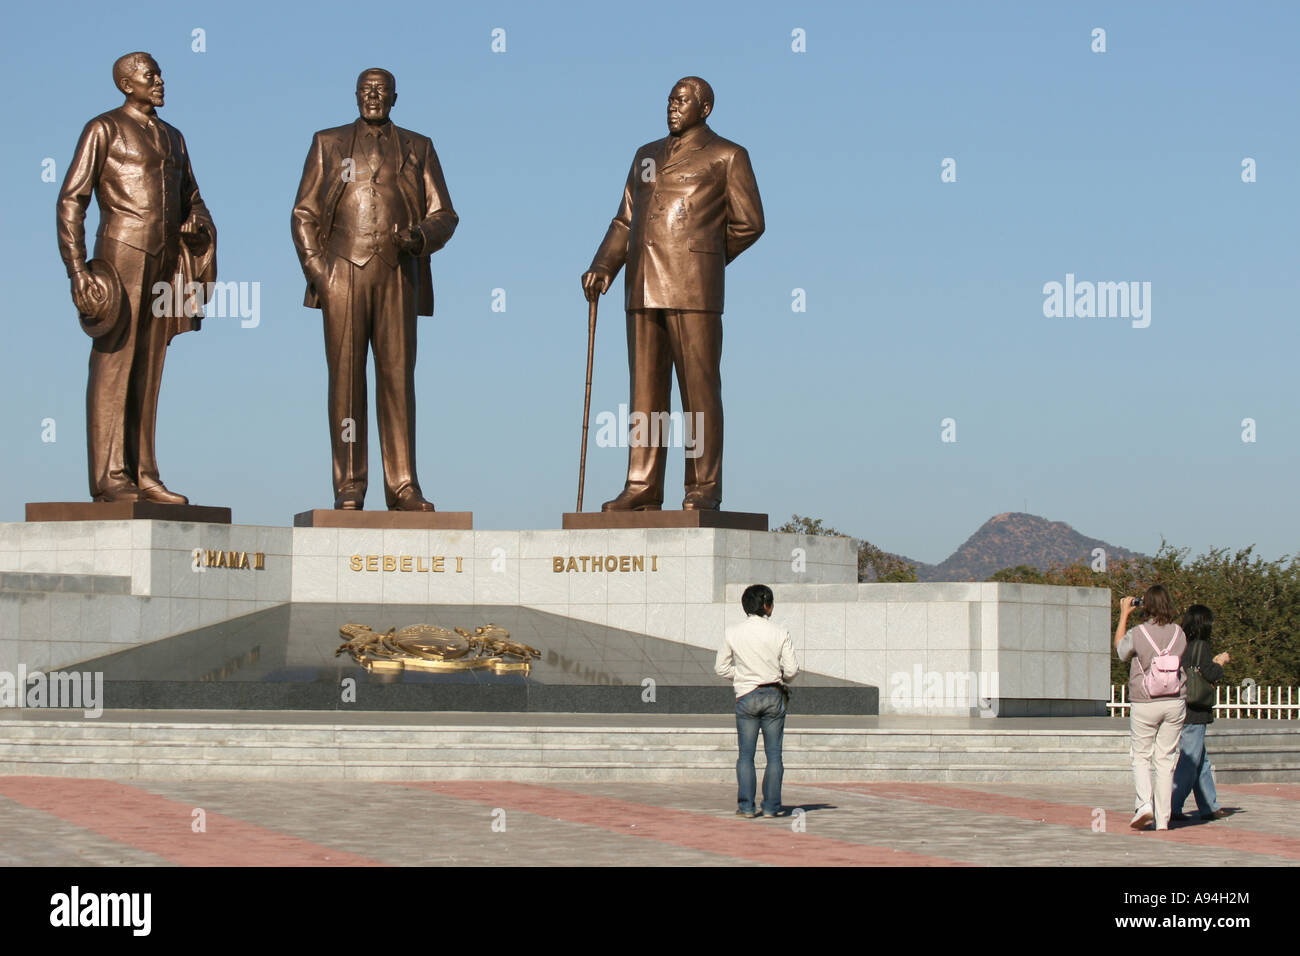 Monument à Gaborone de 3 chefs Khama III Sebele I et Bathoen I responsable d'assurer l'indépendance du Botswana Banque D'Images